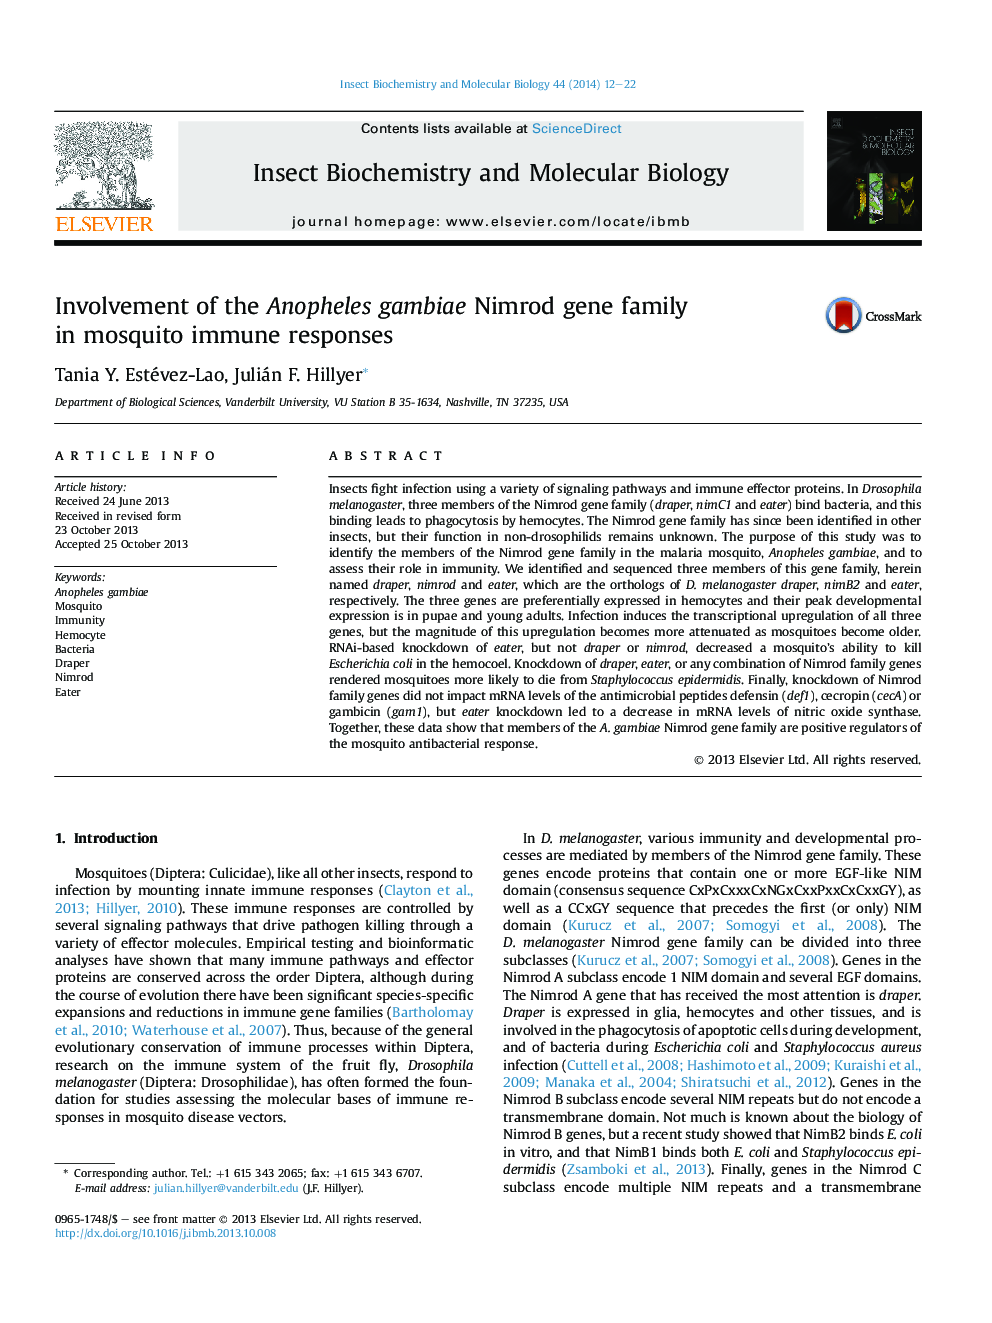 Involvement of the Anopheles gambiae Nimrod gene family in mosquito immune responses